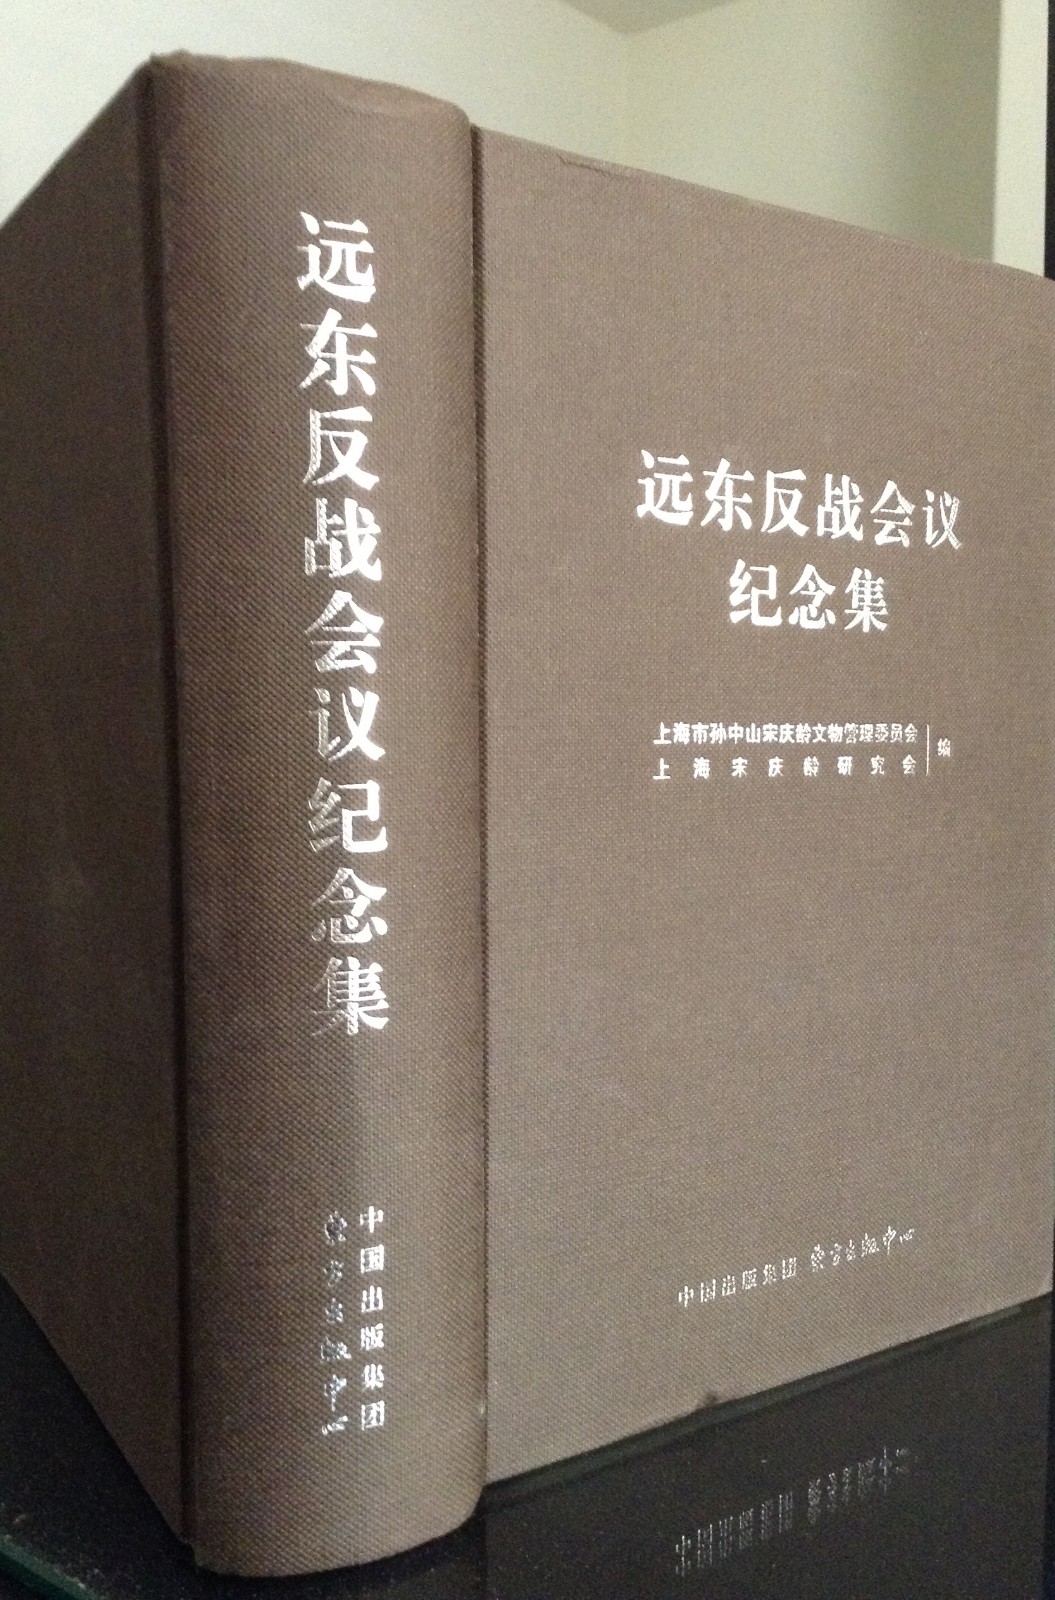 11.近年出版的《远东反战会议纪念集》.JPG